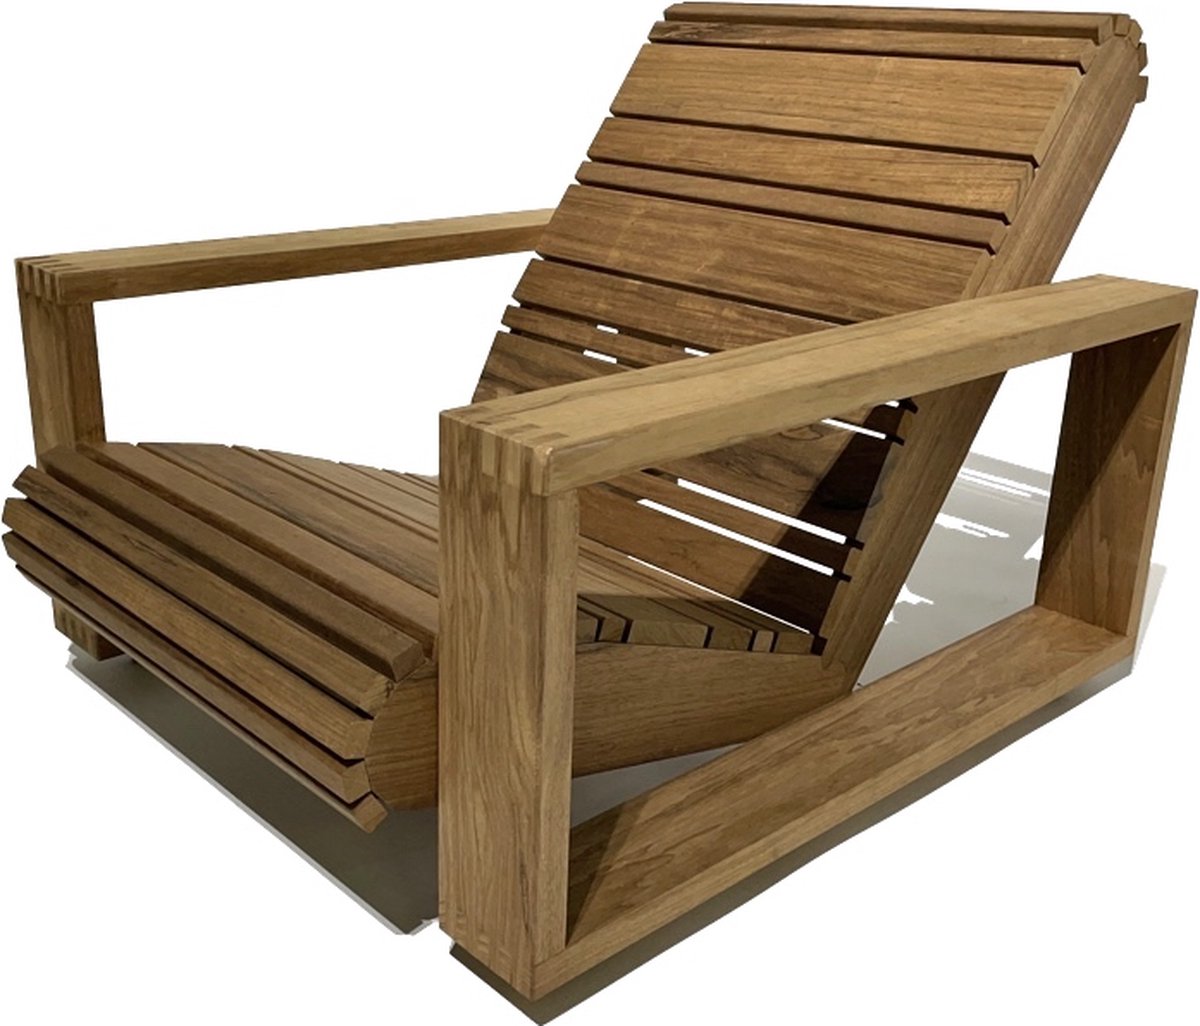 ZITTEM One - Lage Tuinstoel - Loungestoel - 73x91x64 cm - Frake hout